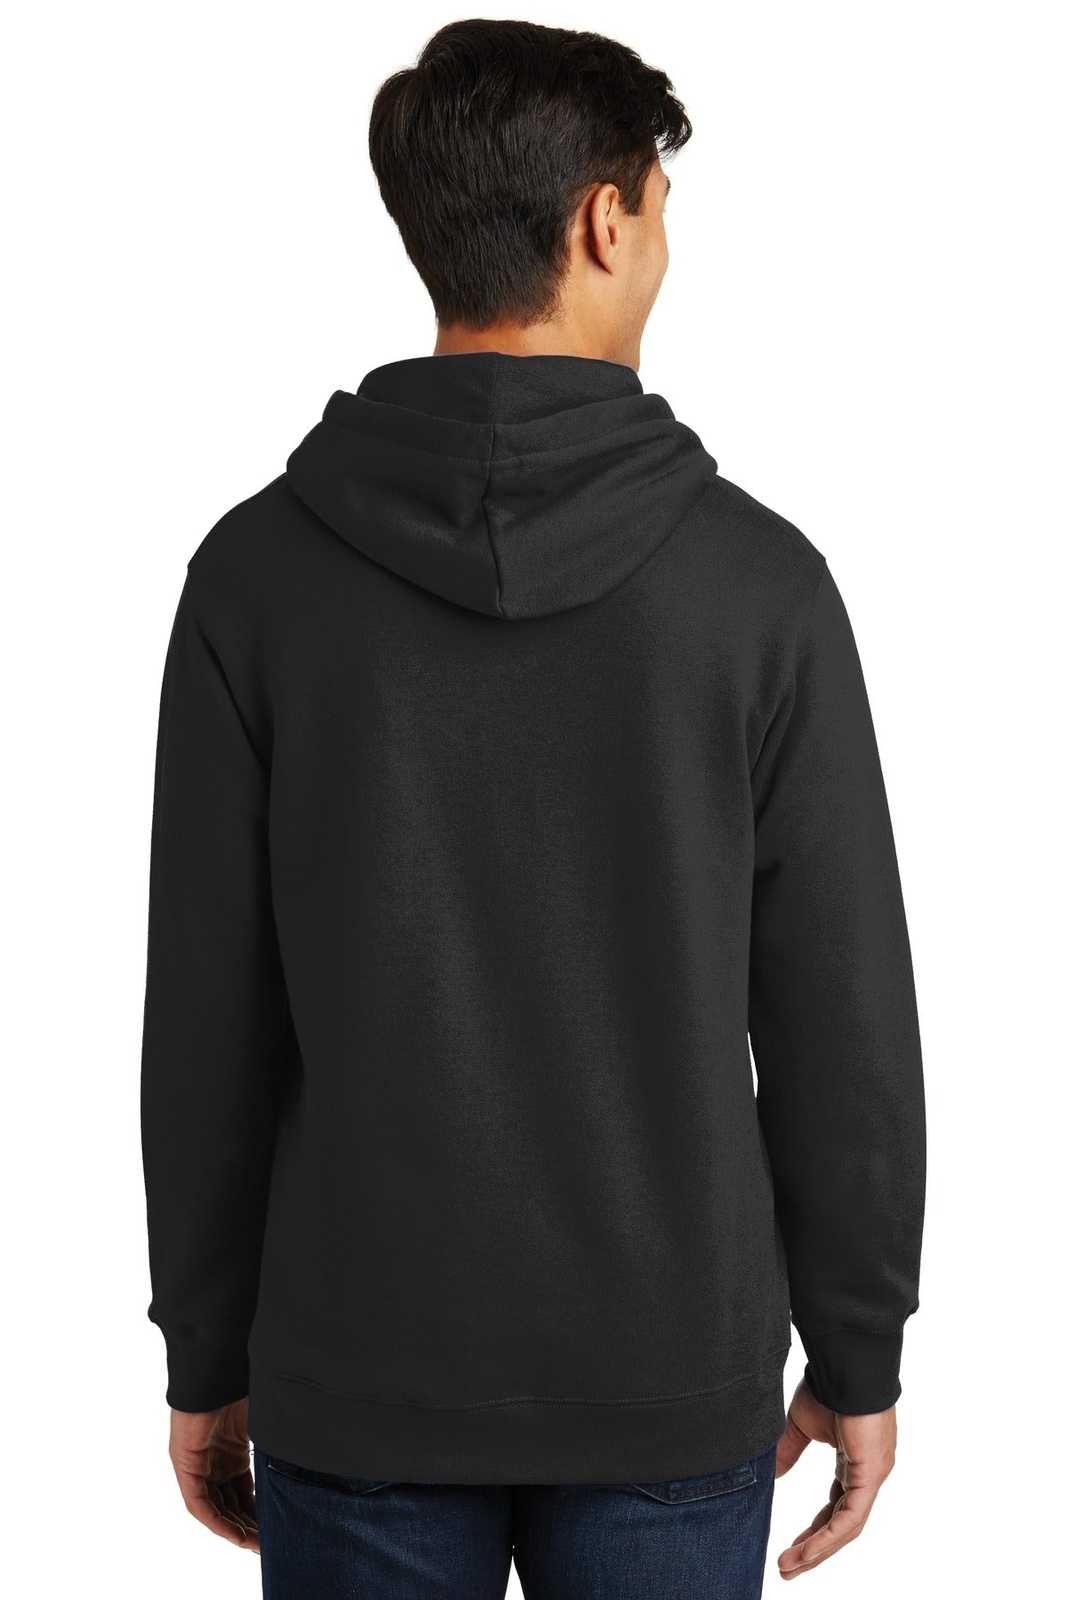 Port & Company PC850H Fan Favorite Fleece Pullover Hooded Sweatshirt - Jet Black - HIT a Double - 1